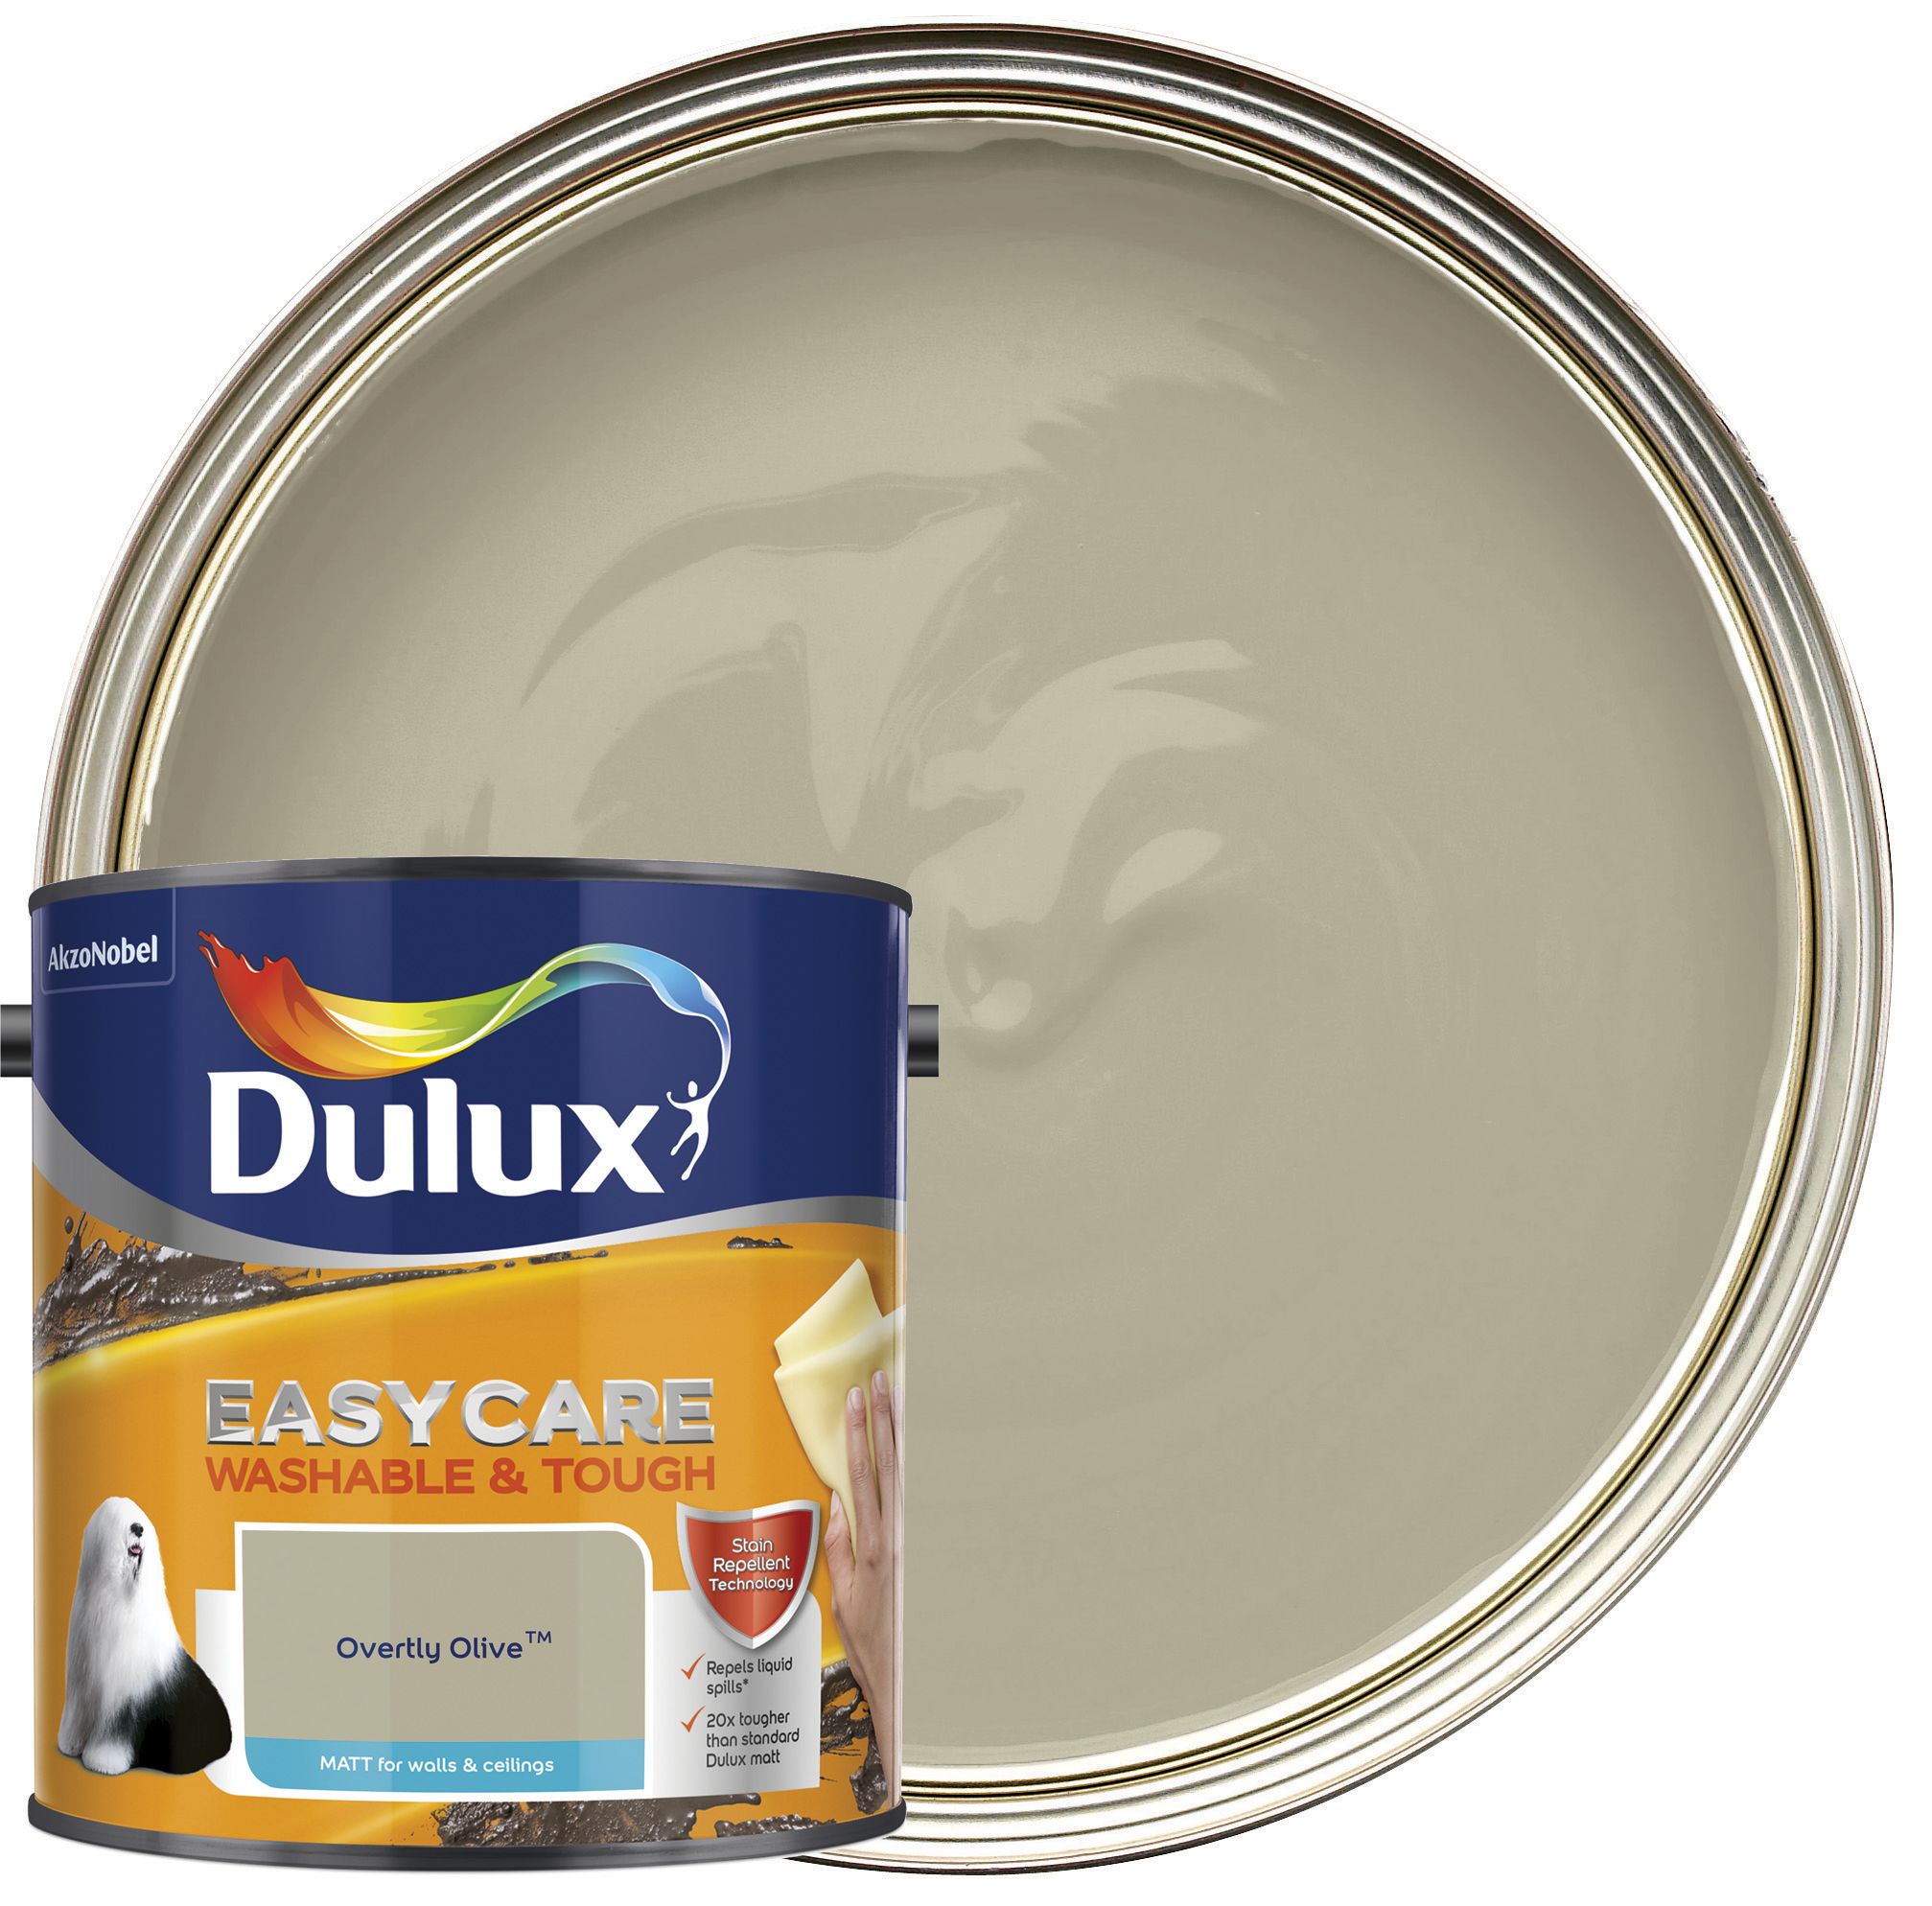 Dulux Easycare Washable & Tough Matt Emulsion Paint - Overtly Olive - 2.5L